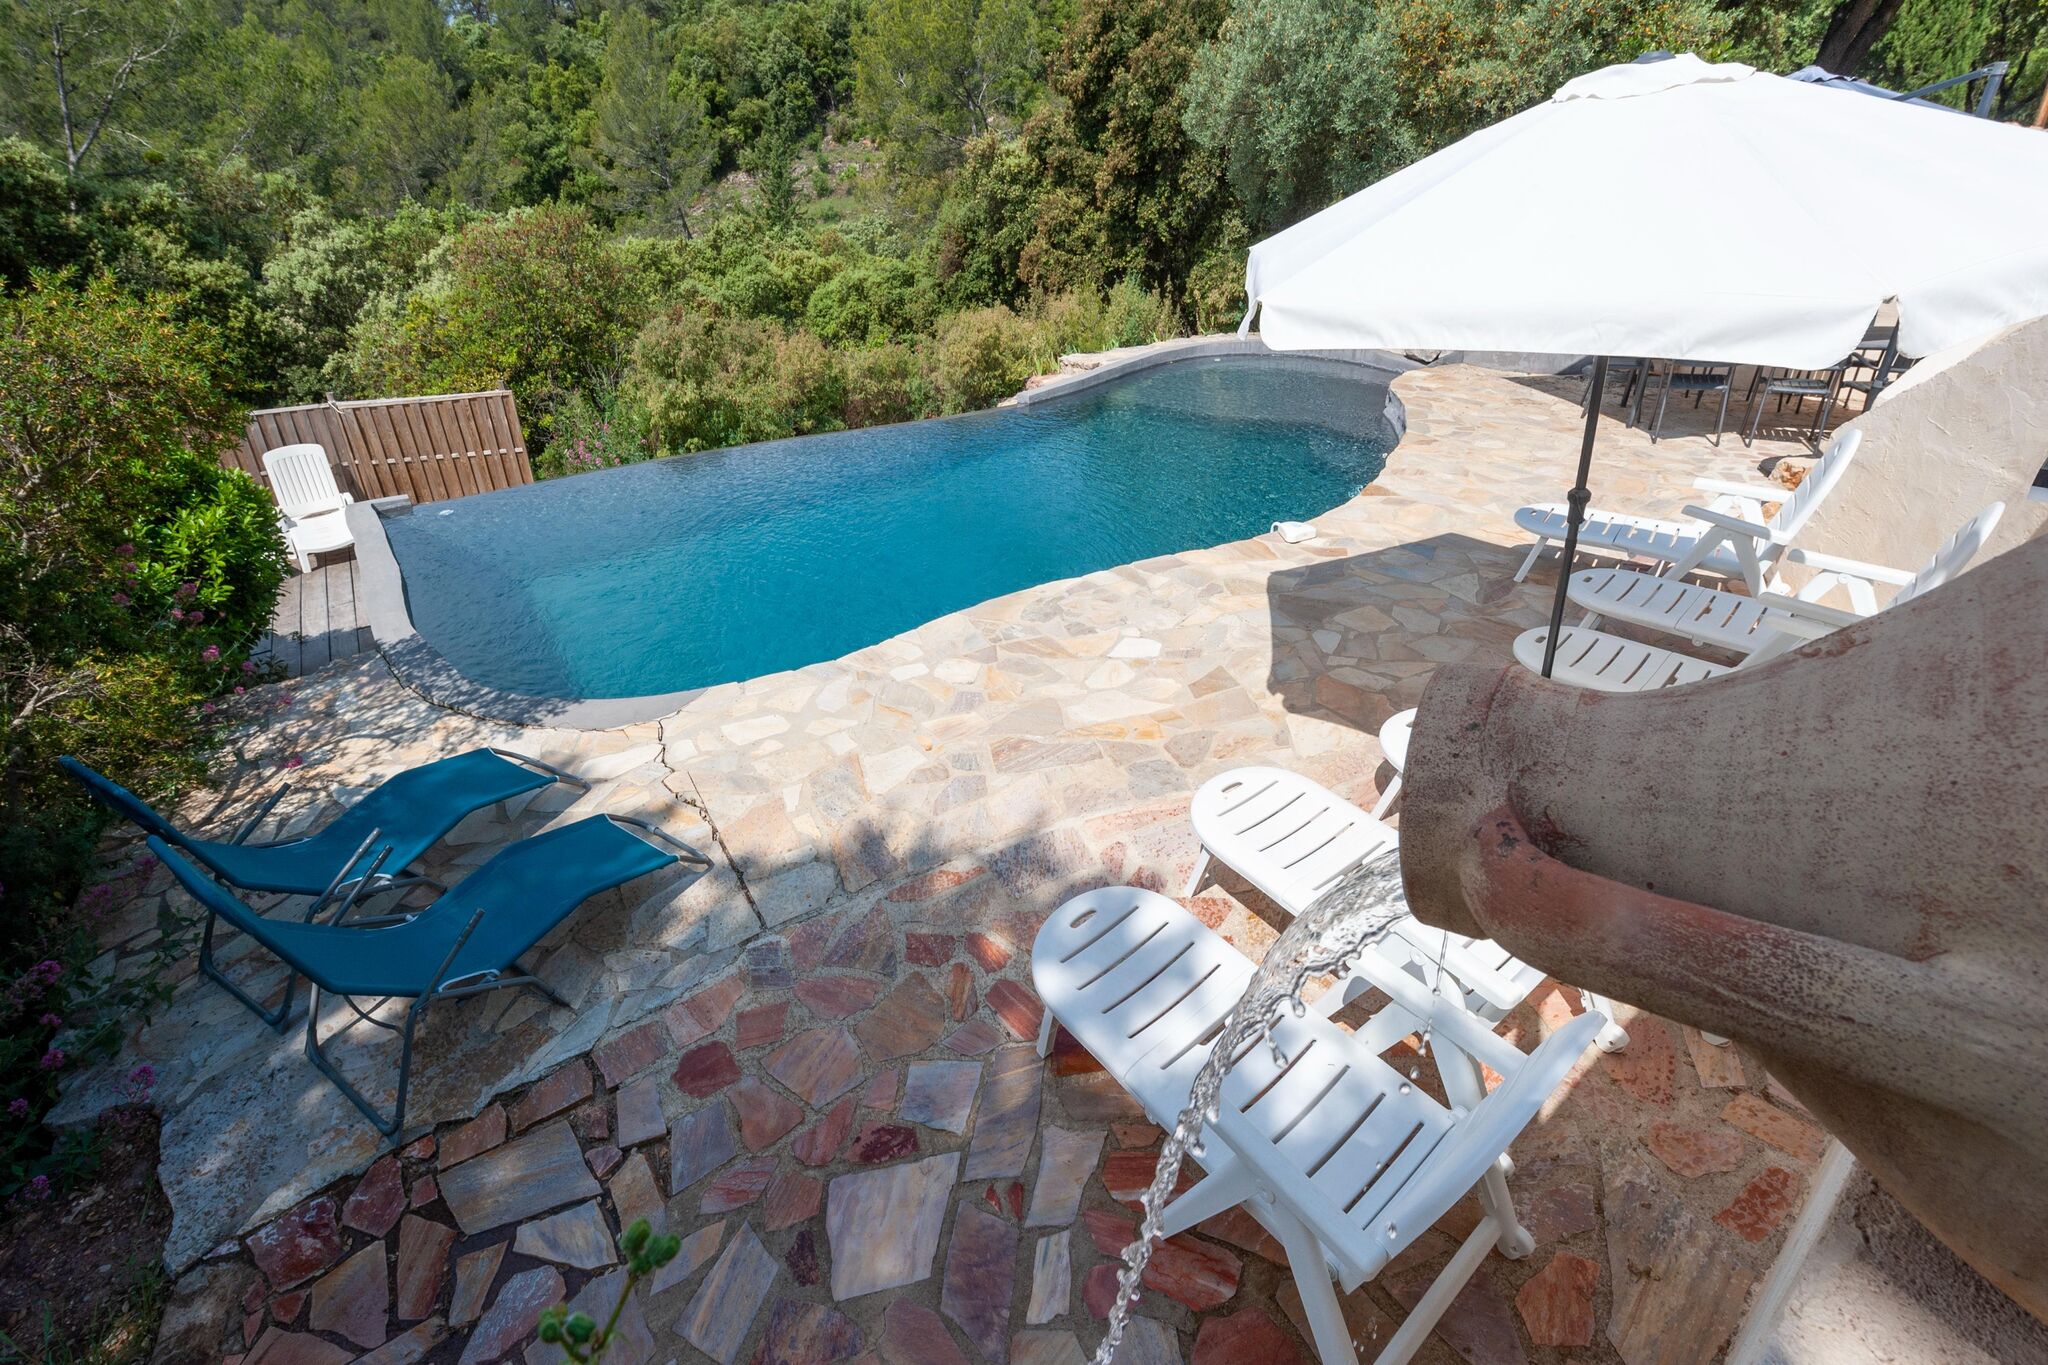 Maison de vacances au calme avec piscine privée à 35 min de Hyere et des plages.